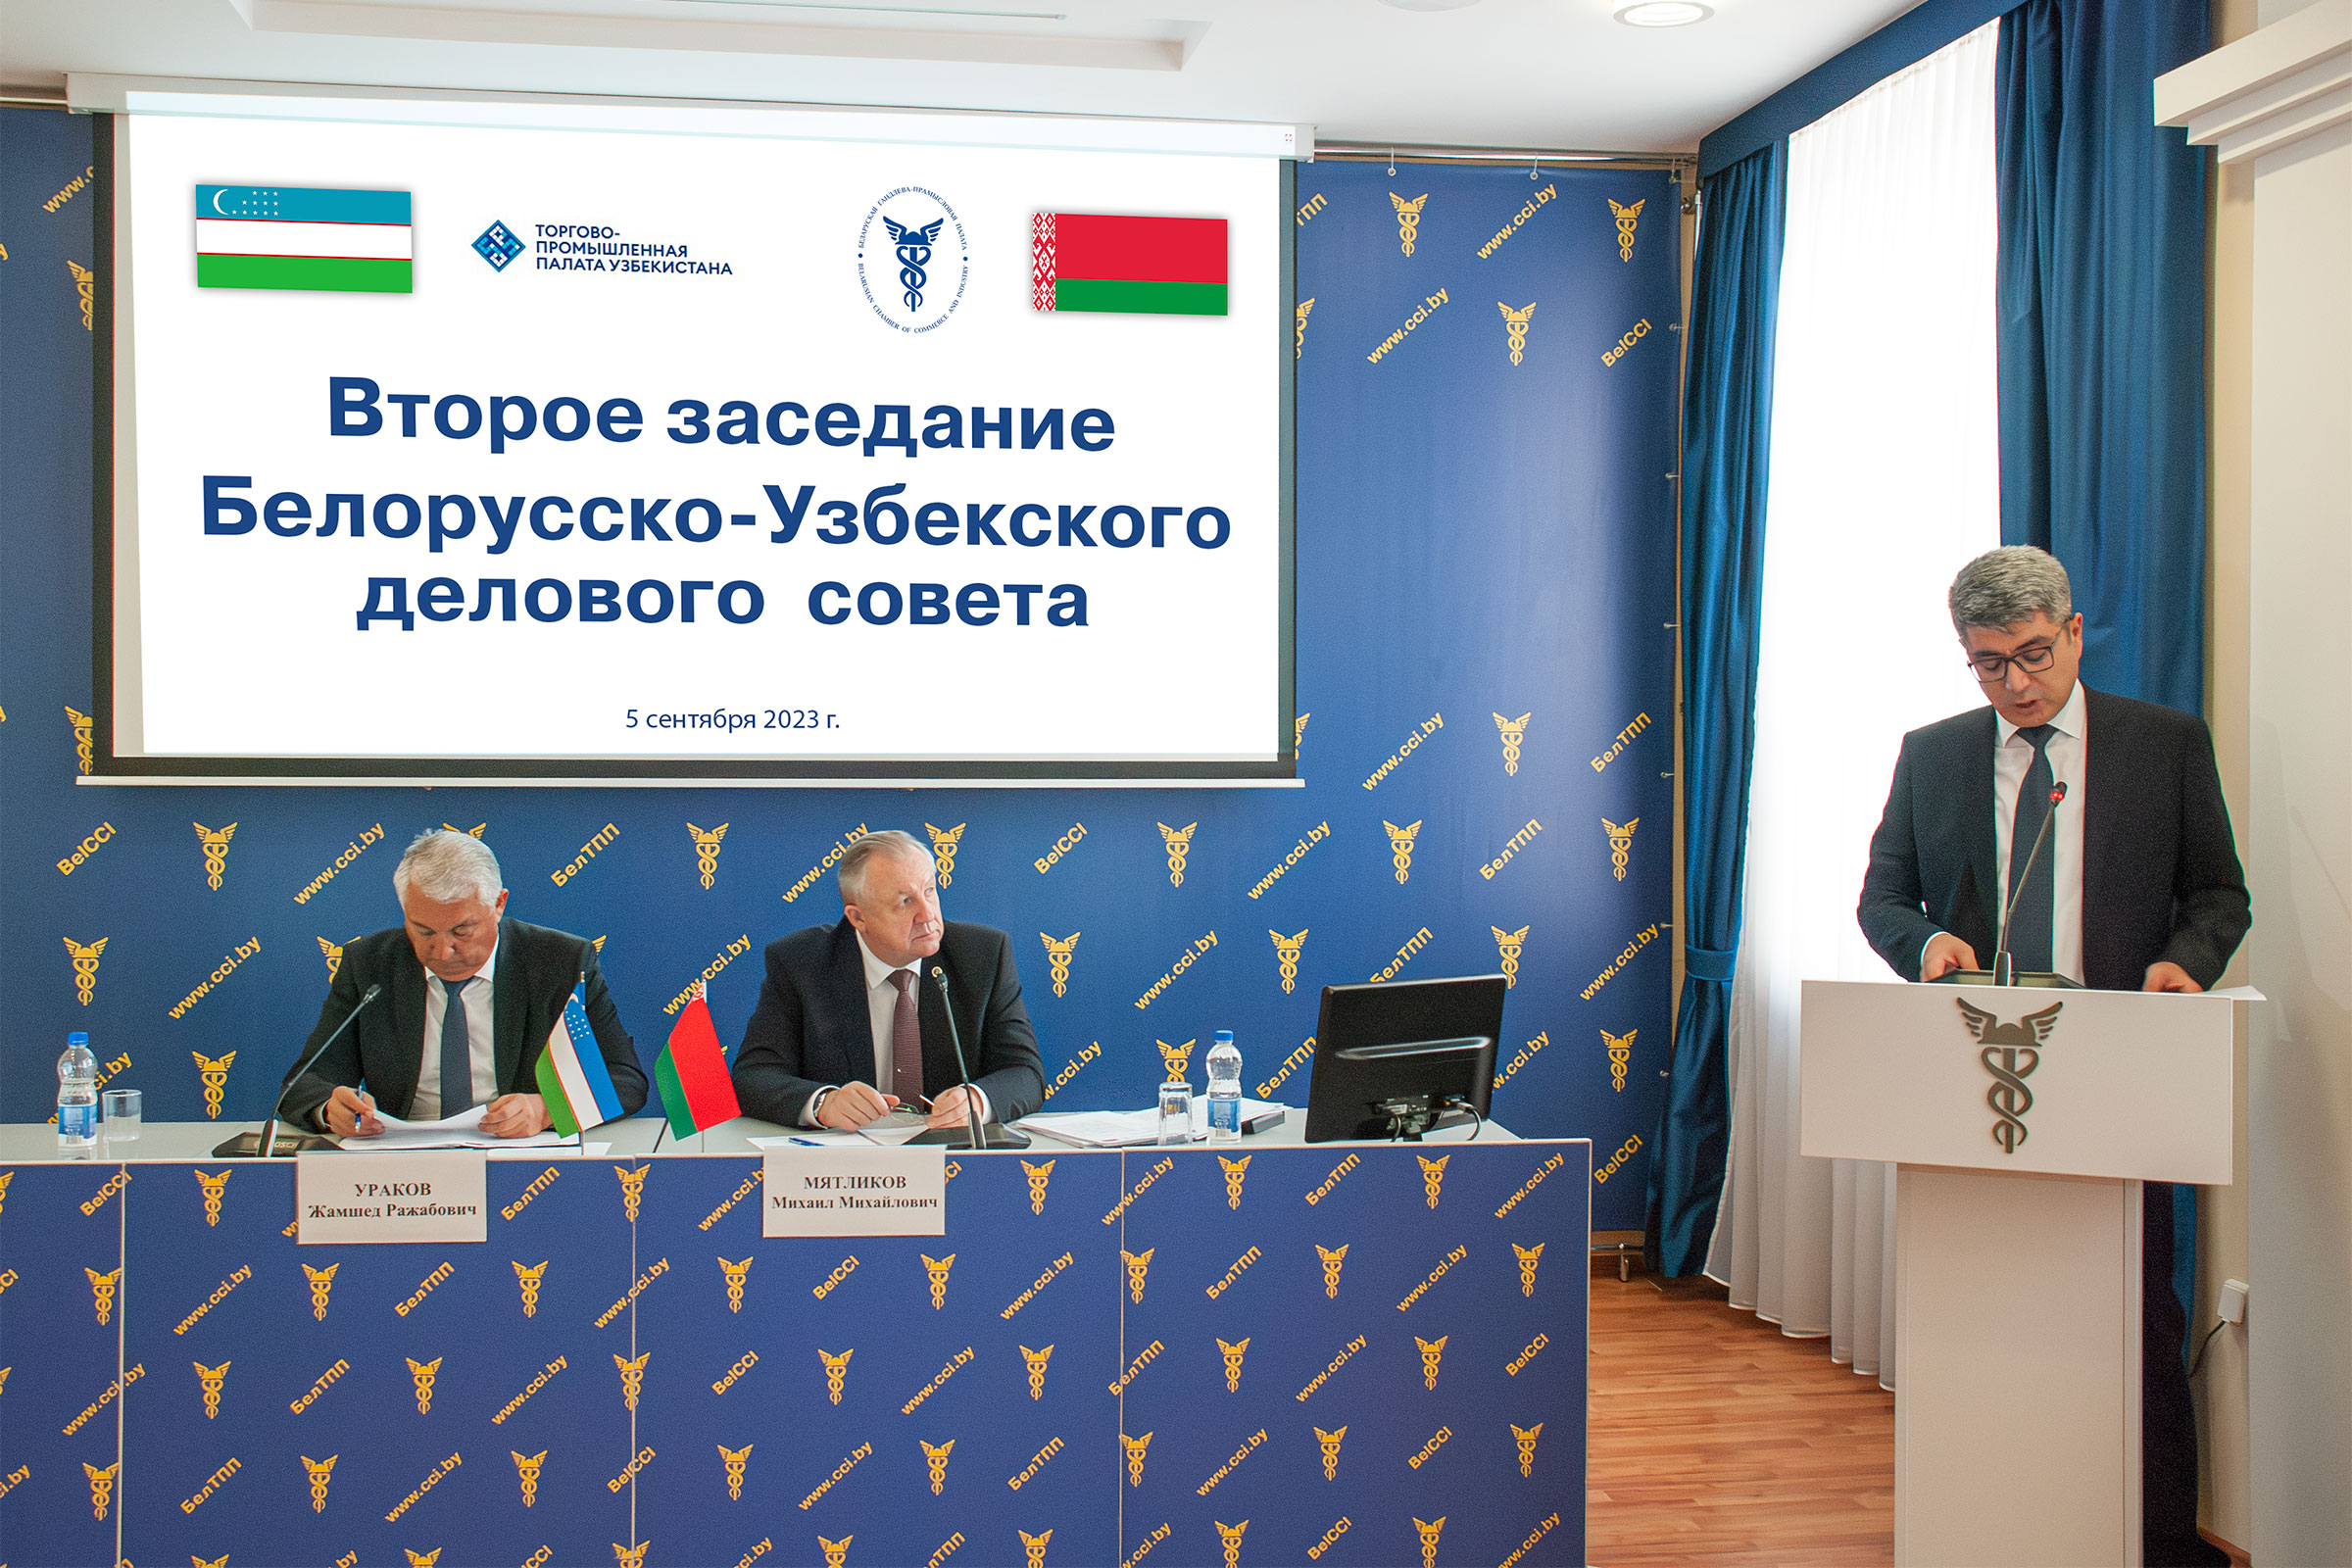 Второе заседание Белорусско-Узбекского делового совета